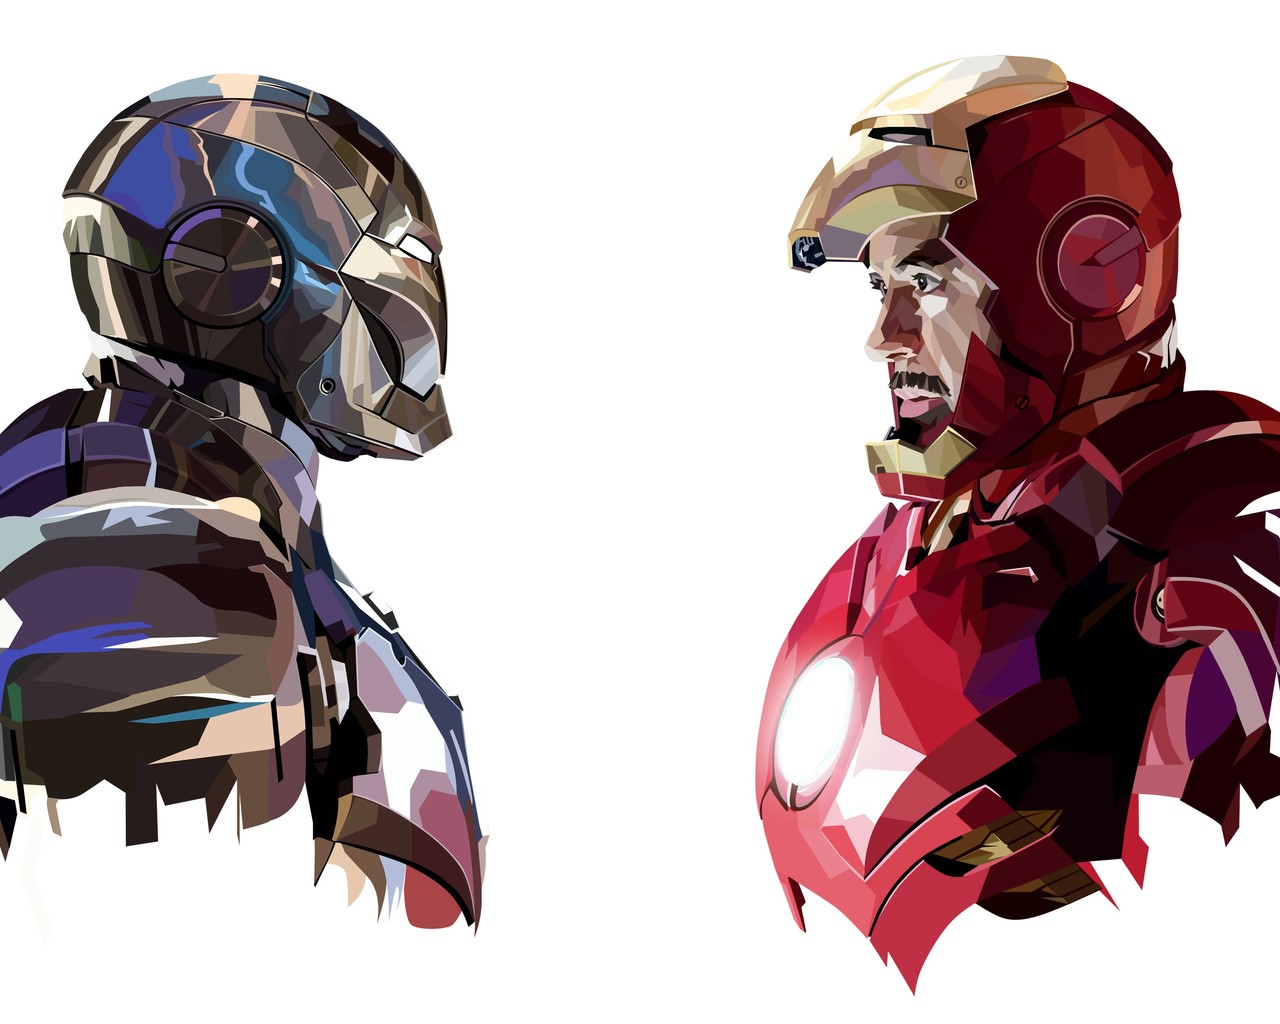 Iron Man Background Image